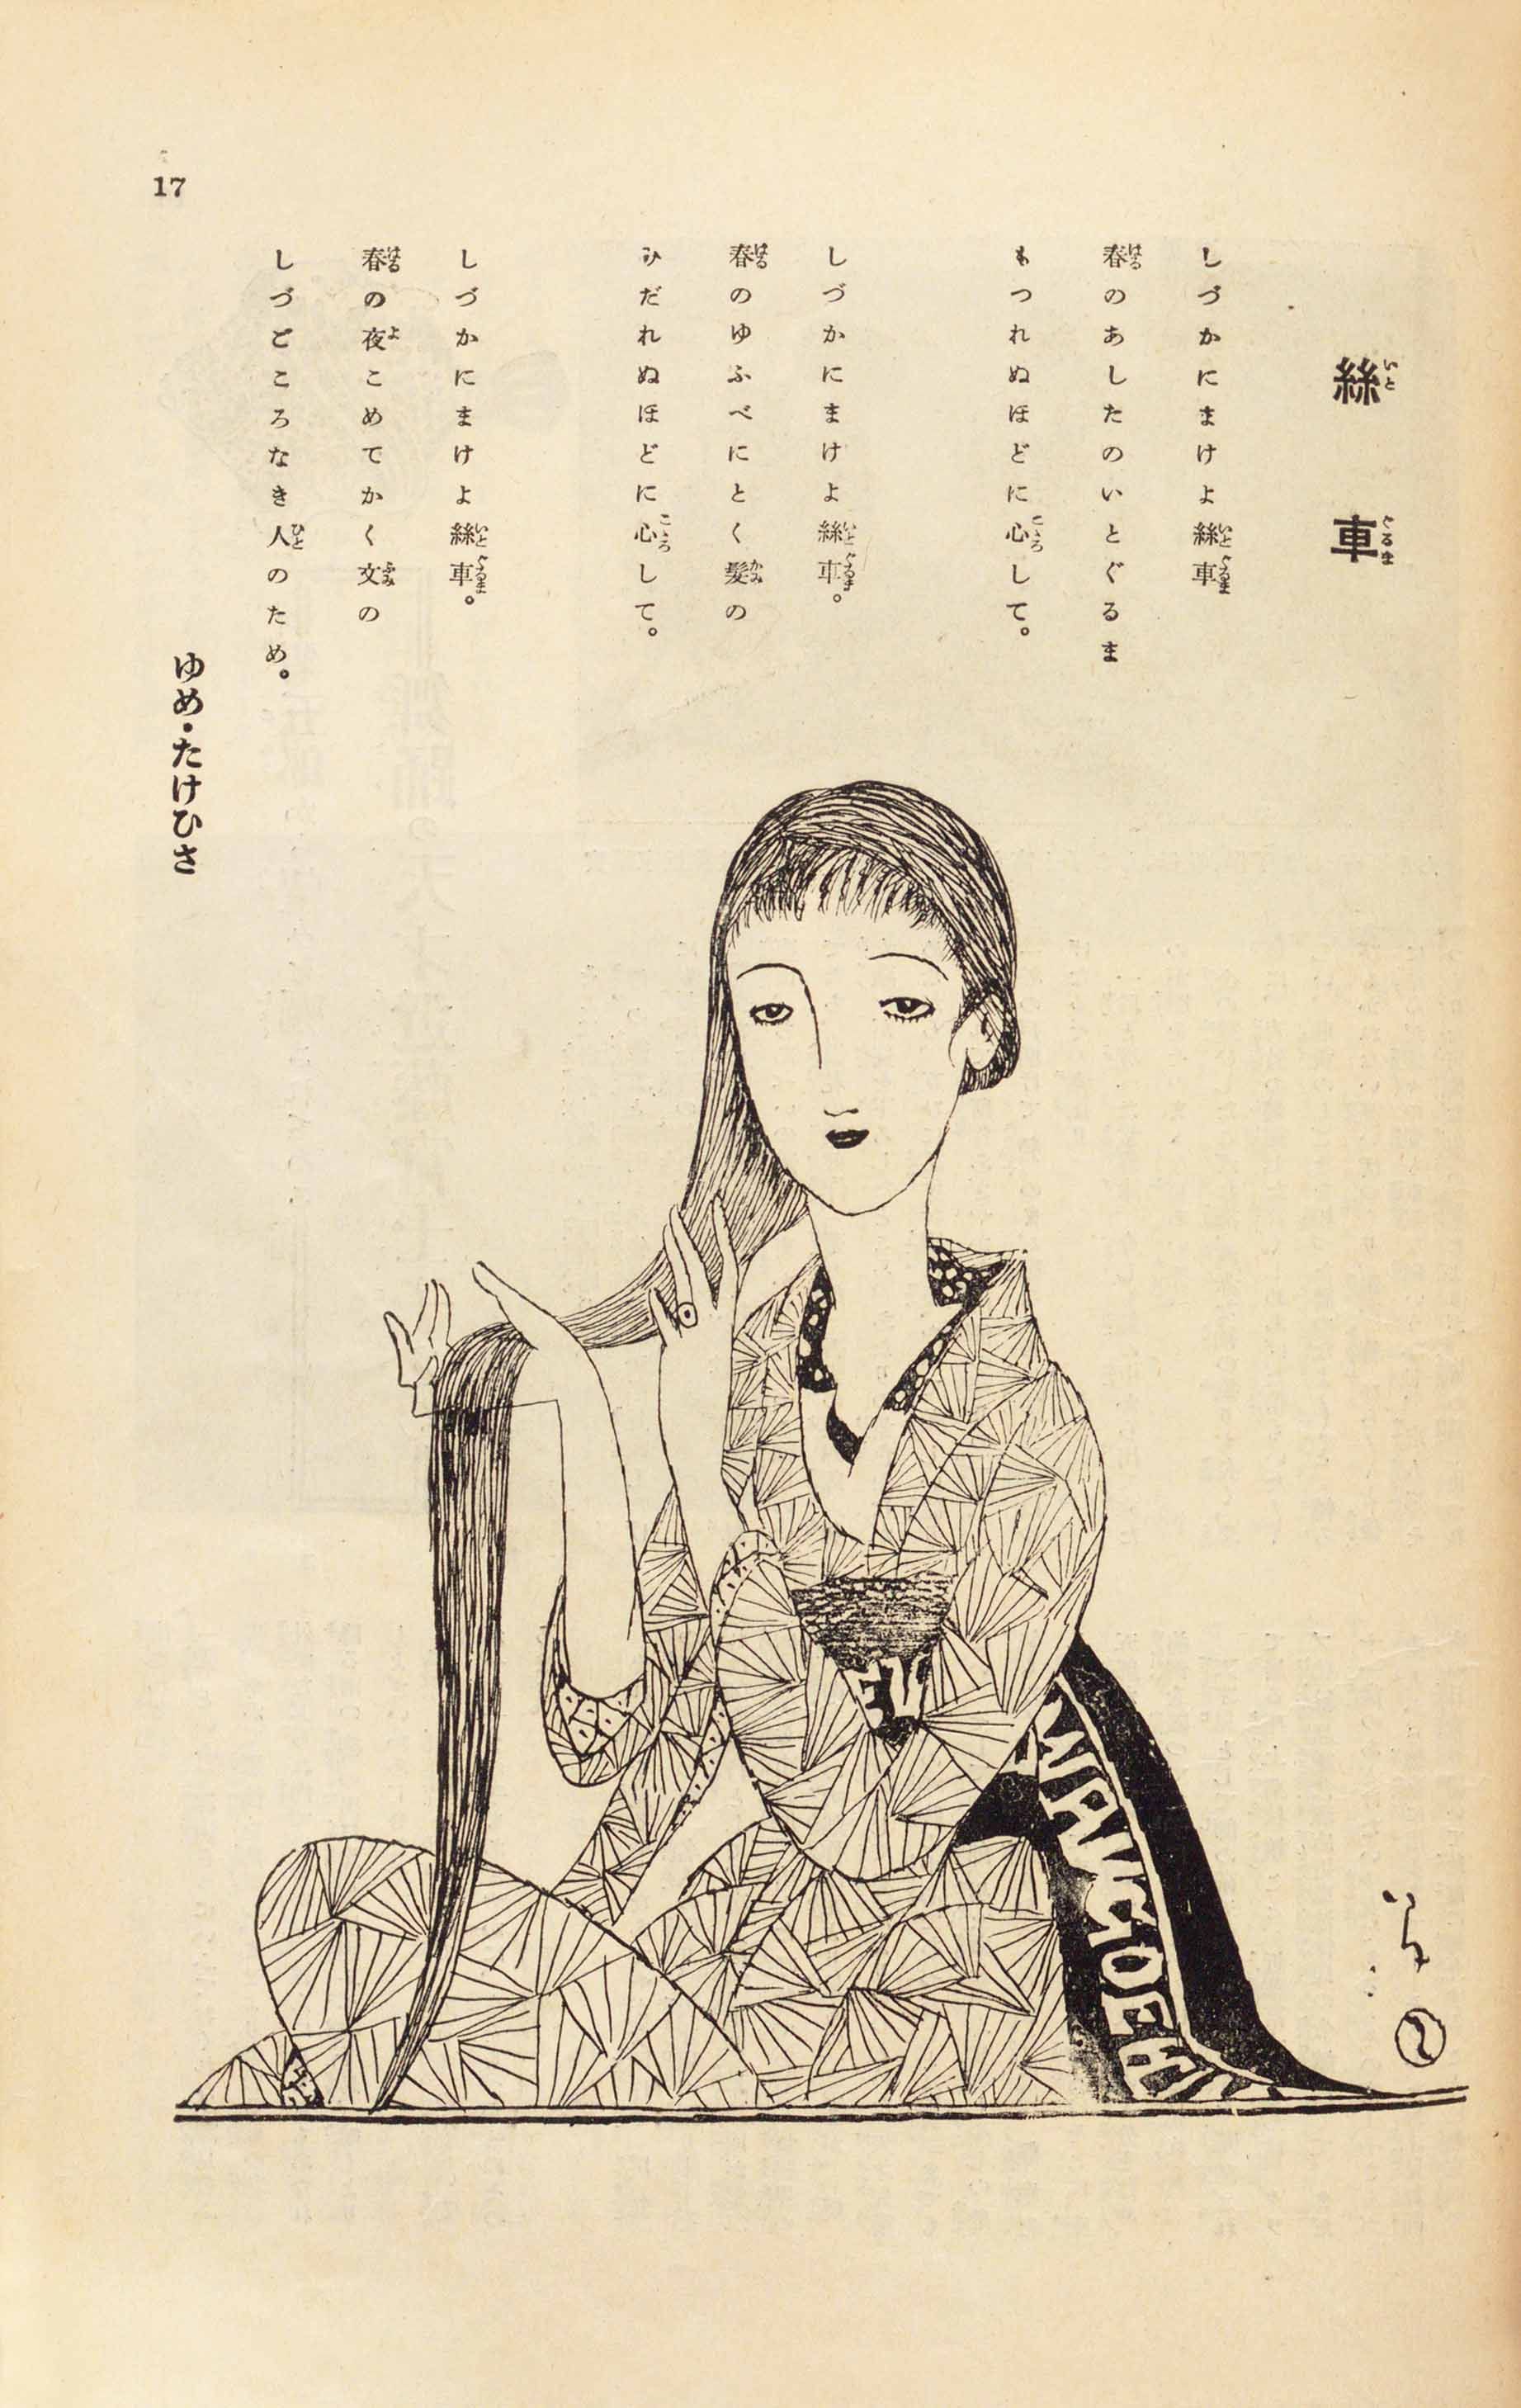 夢二式美人」と称された、抒情的な美人画で知られる竹久夢二と『婦人画報』